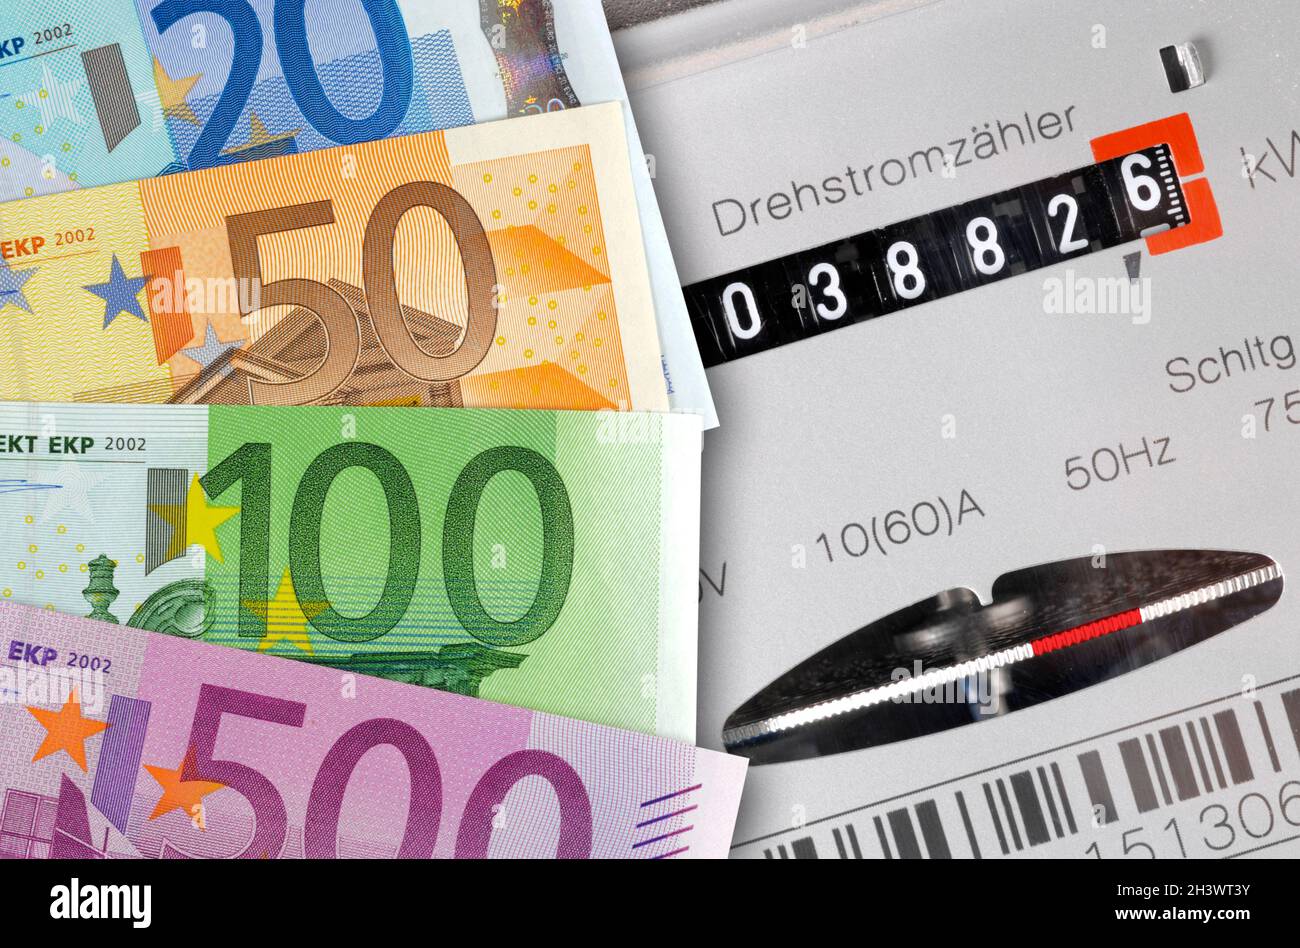 Euro Geldscheine und Nebenkosten für Energie Foto de stock